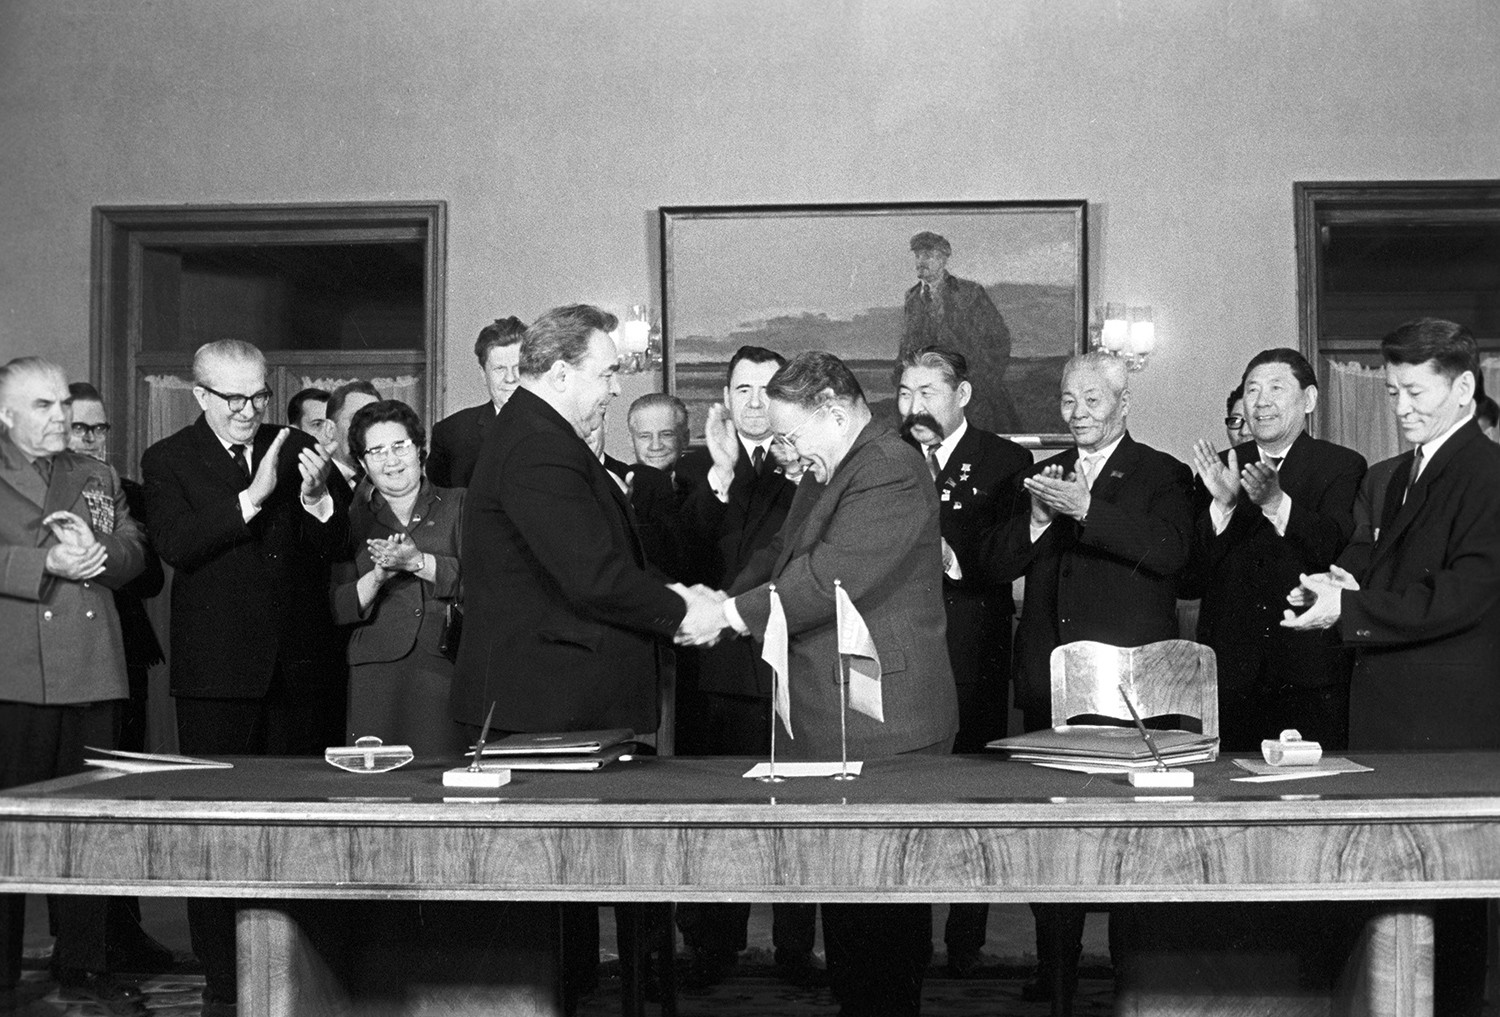 Leonid Breschnew und der Vorsitzende des Ministerrates der mongolischen Volksrepublik Yumjaagiin Tsedenbal schütteln sich die Hände, nachdem sie den Vertrag über Freundschaft, Zusammenarbeit und gegenseitige Unterstützung zwischen der UdSSR und der Mongolei unterzeichnet haben, 1966.